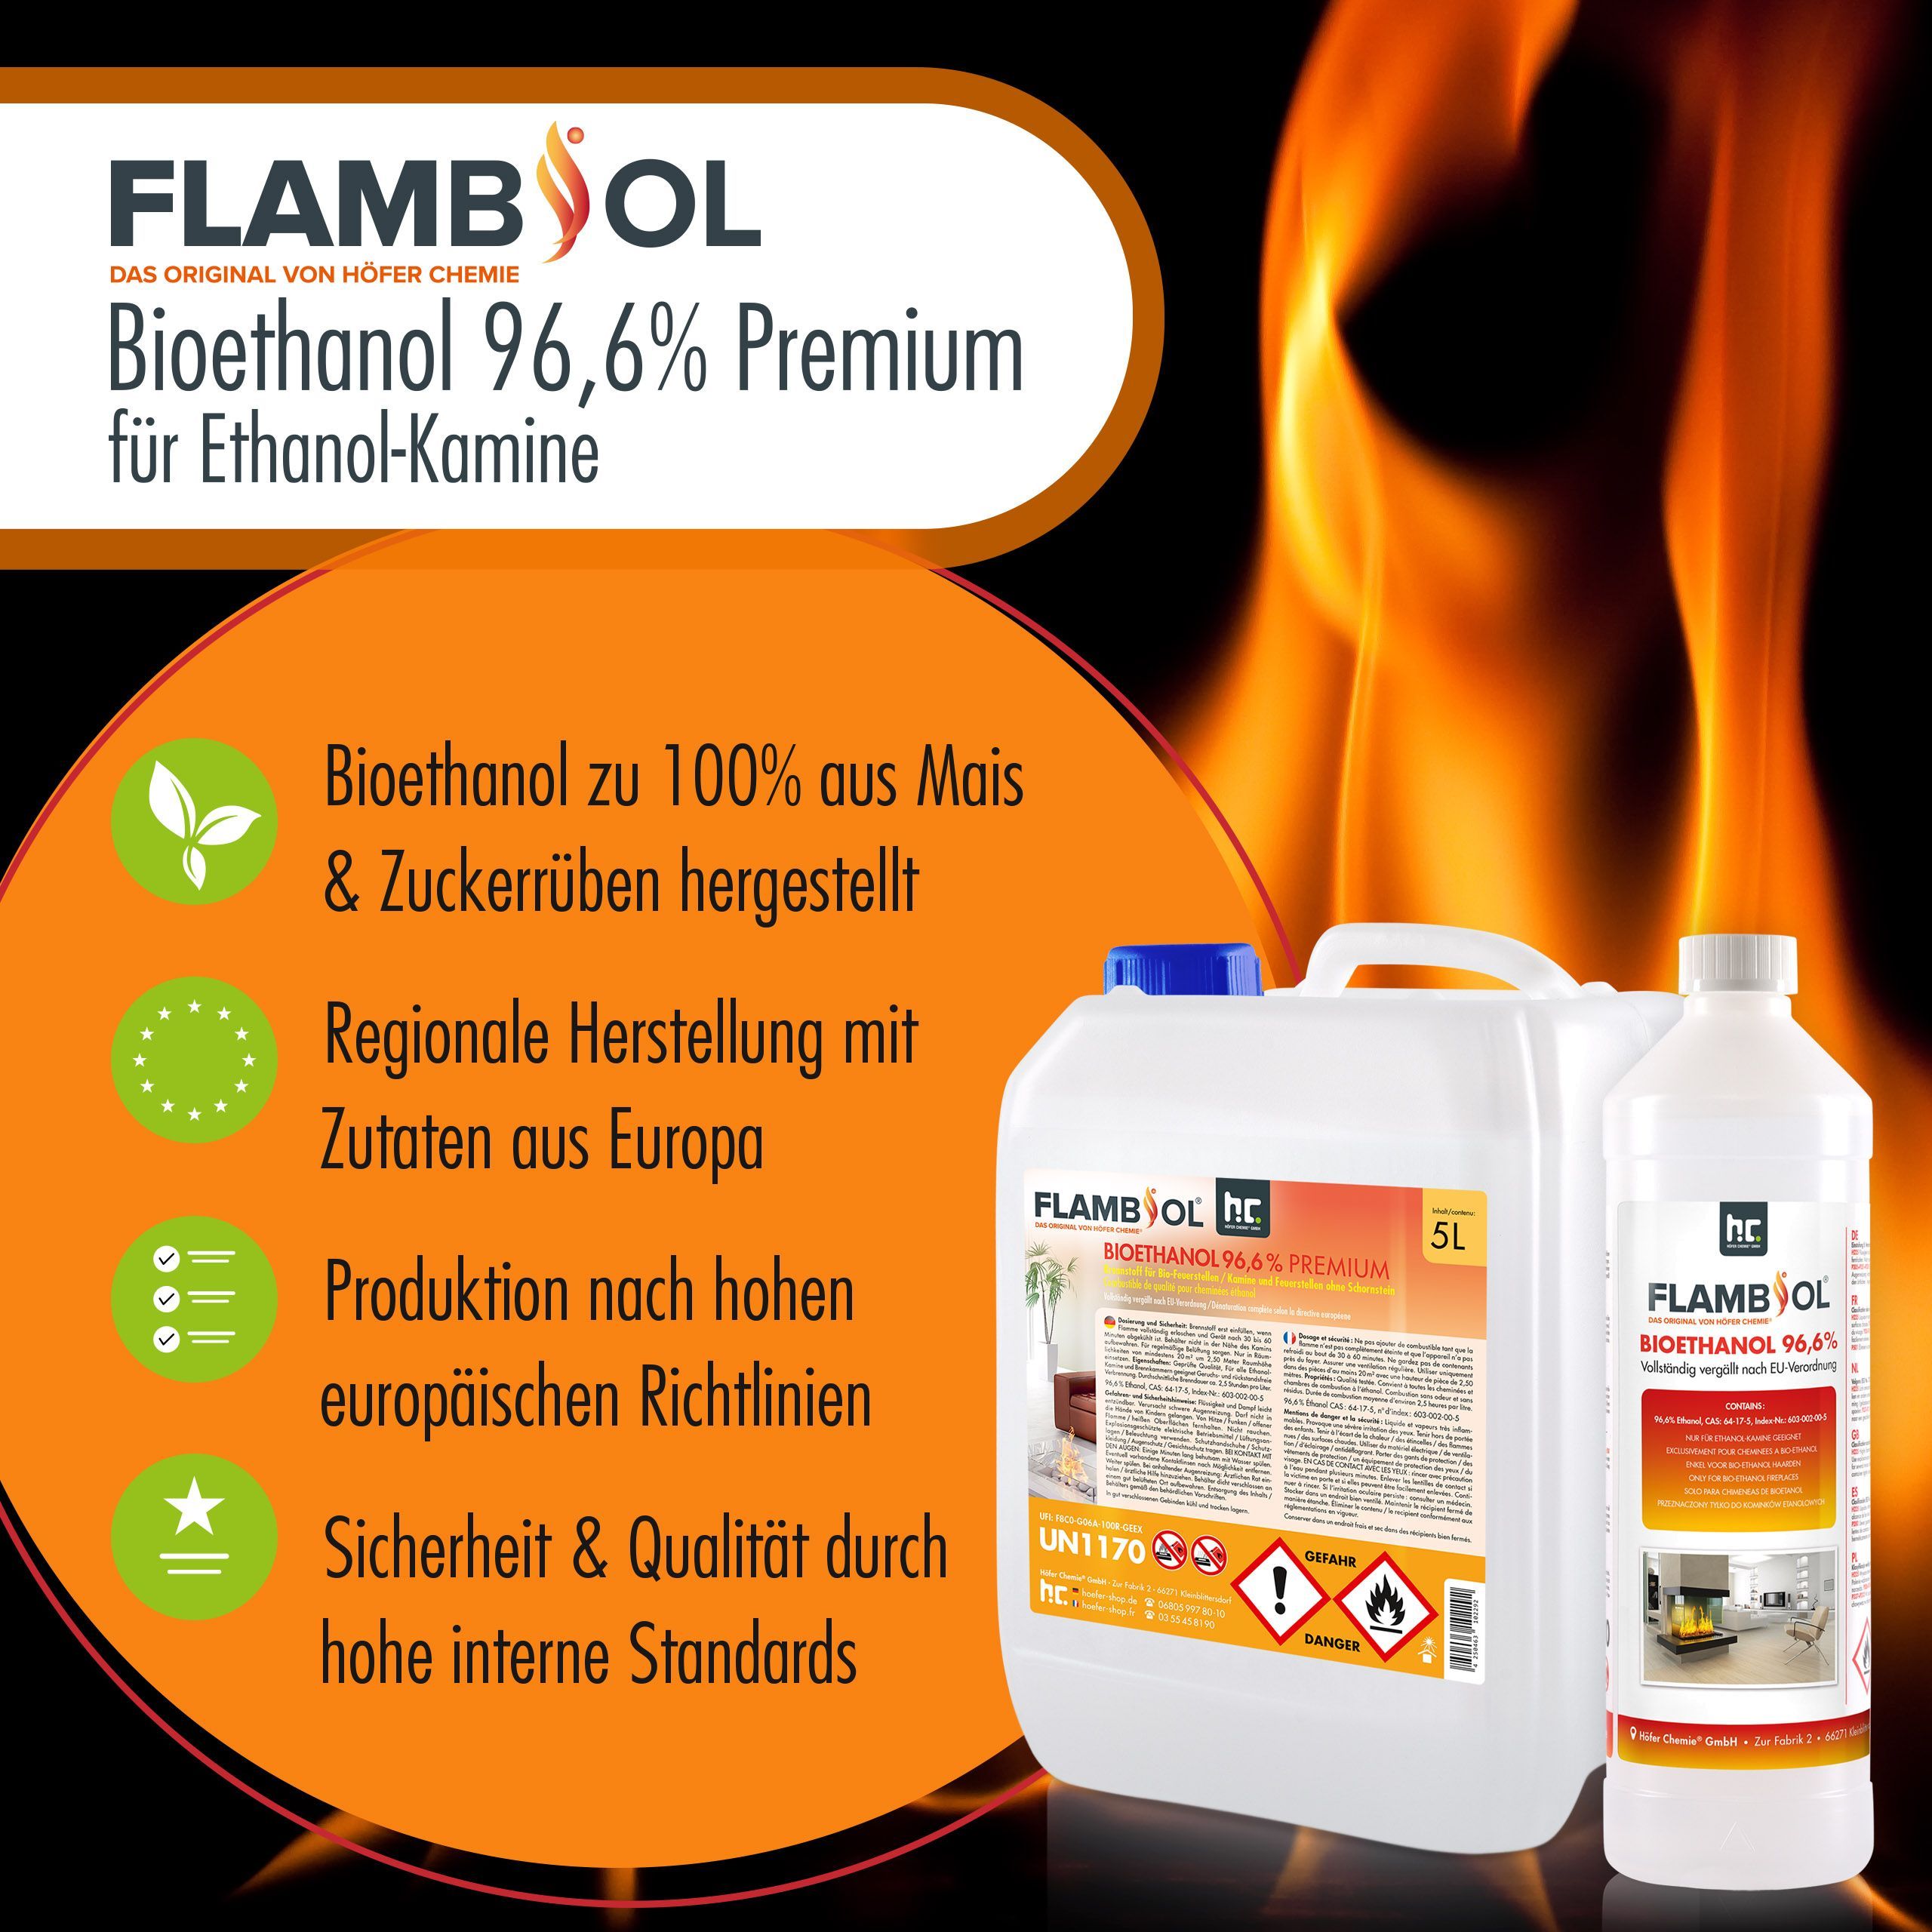 20 L FLAMBIOL® Bioéthanol 96,6% Premium pour cheminée à éthanol en bidons